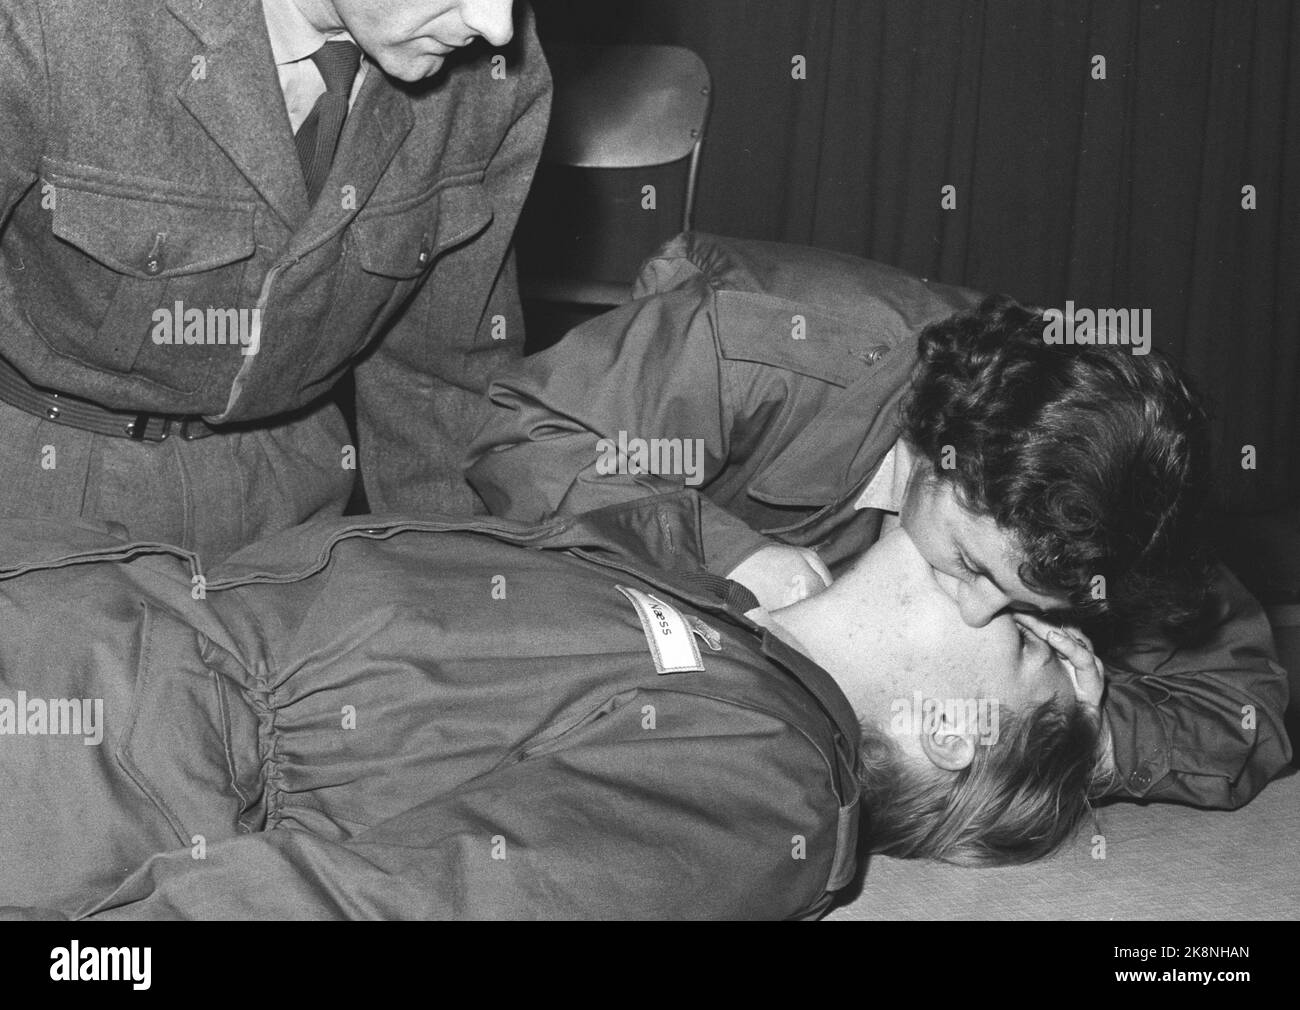 Lahaugmoen in Oslo Dezember 1959. Soldaten im Make-up: Frauen in Uniform. Erste Hilfe ist ein wichtiger Teil des Trainings. Die Mund-zu-Mund-Methode ist nett und relativ einfach zu erlernen. Foto: Ivar Aaserud / Aktuell / NTB Stockfoto